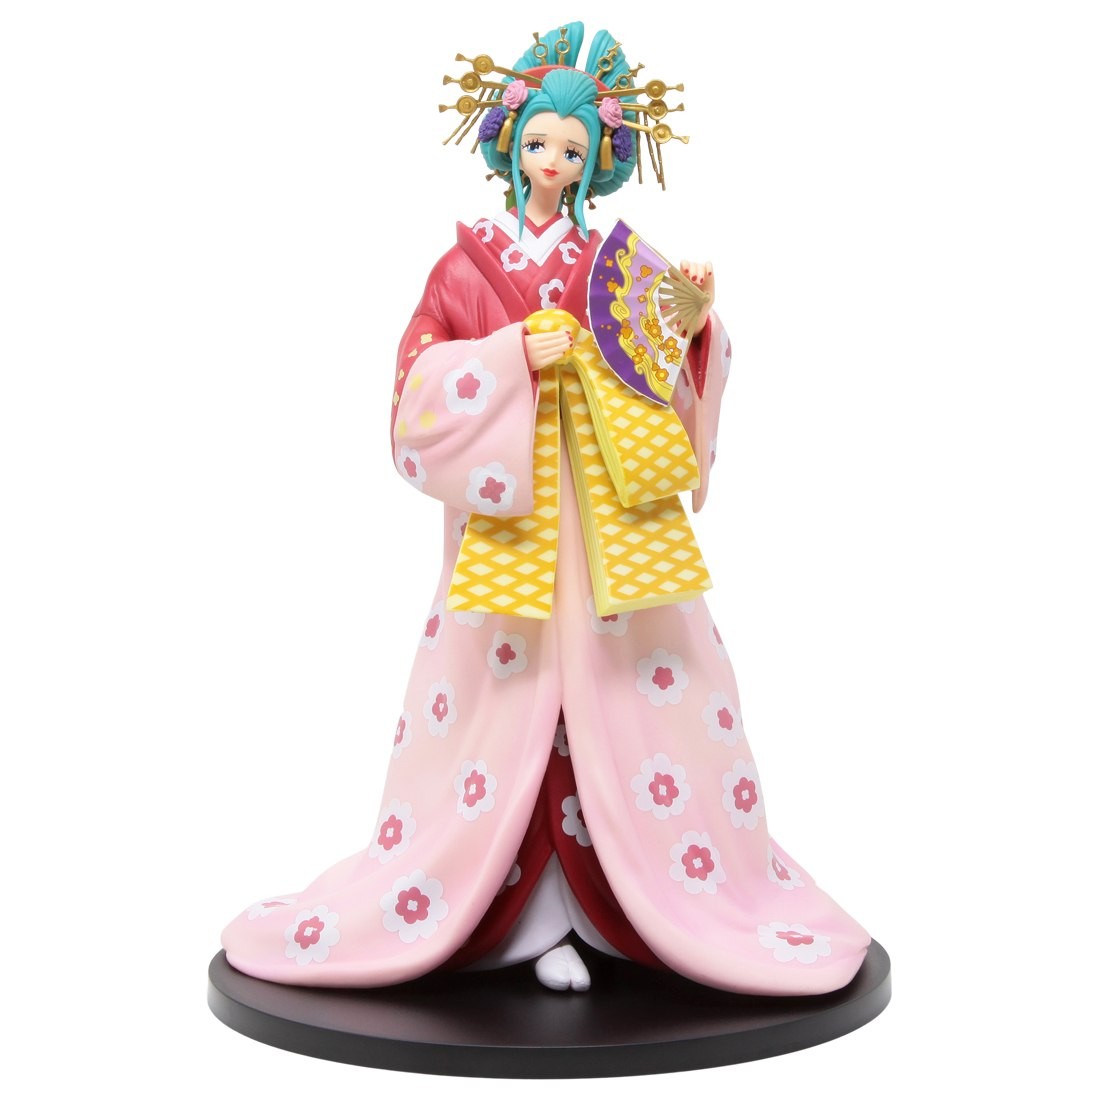 Bandai Ichibansho One Piece Hana Komurasaki Figure (pink)